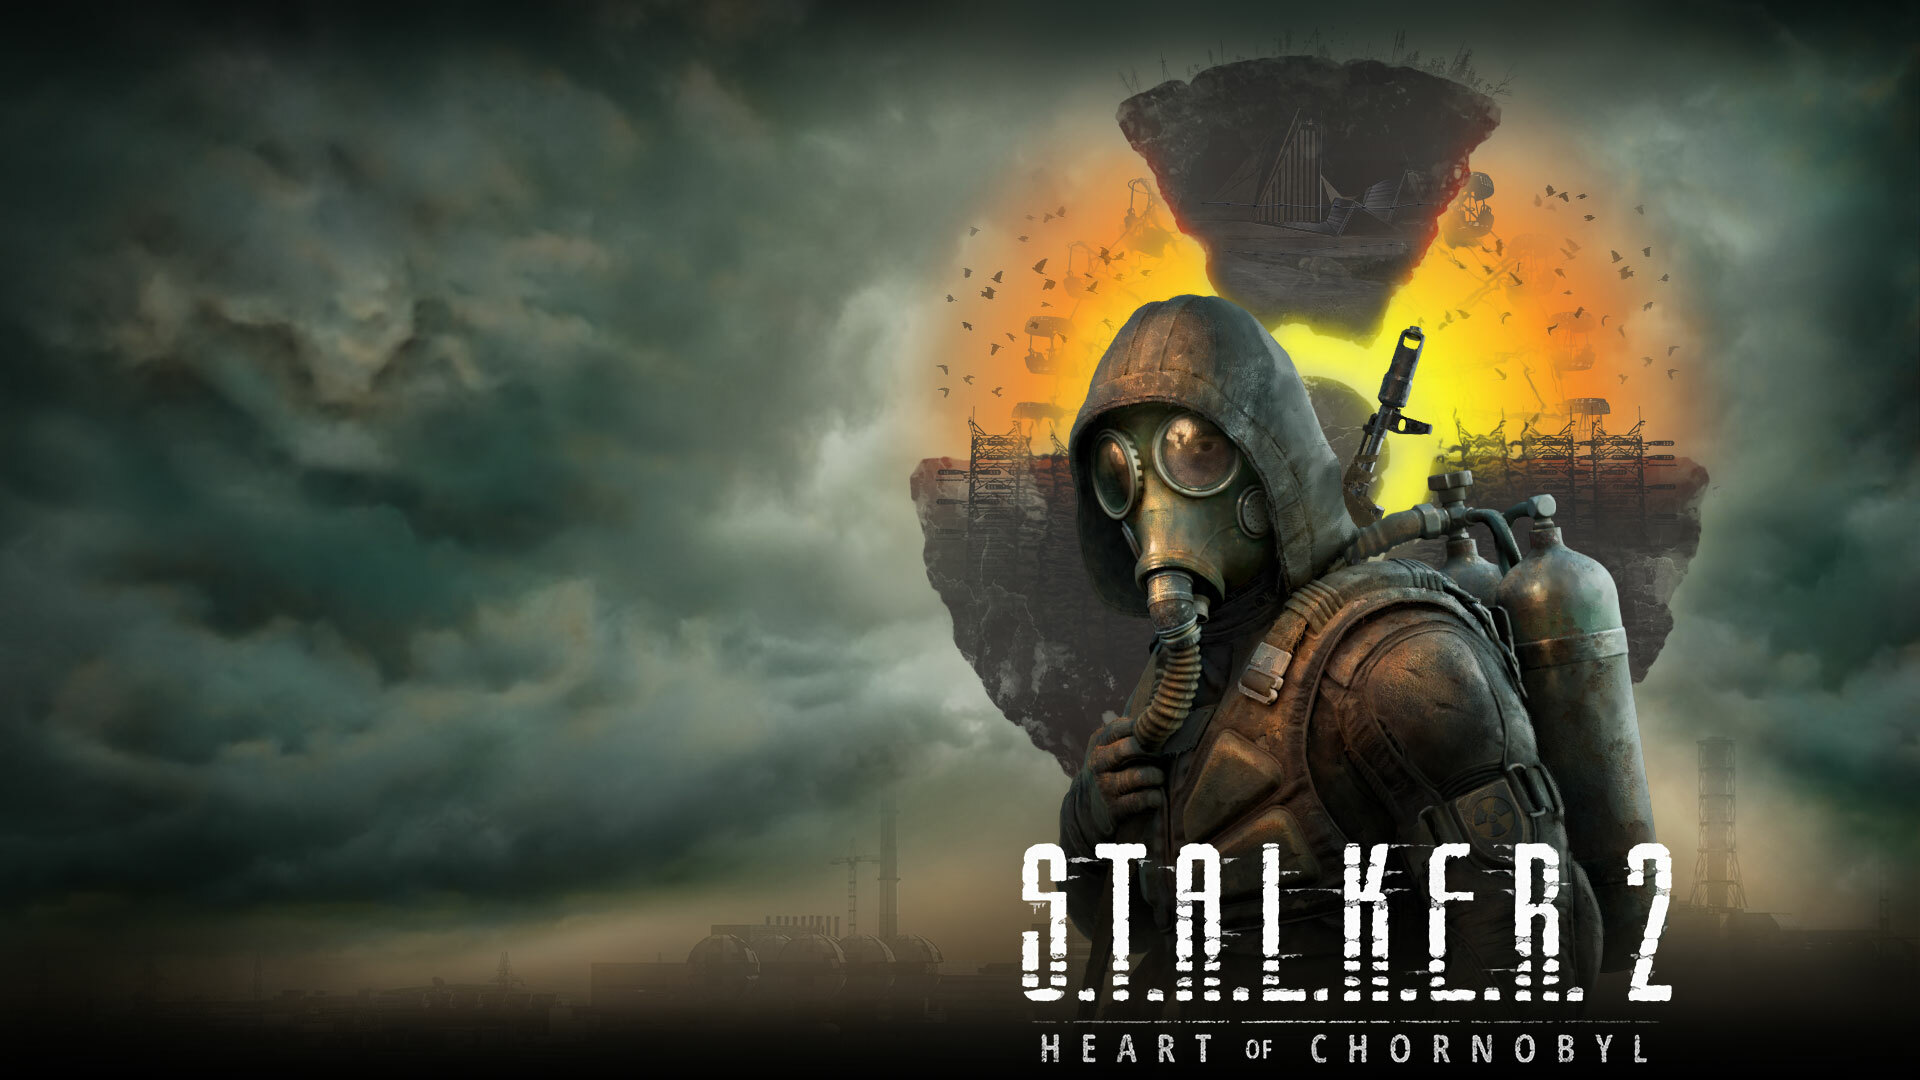 Сталкер 2 Сердце Чернобыля: дата выхода, геймплей, сюжет и многое другое